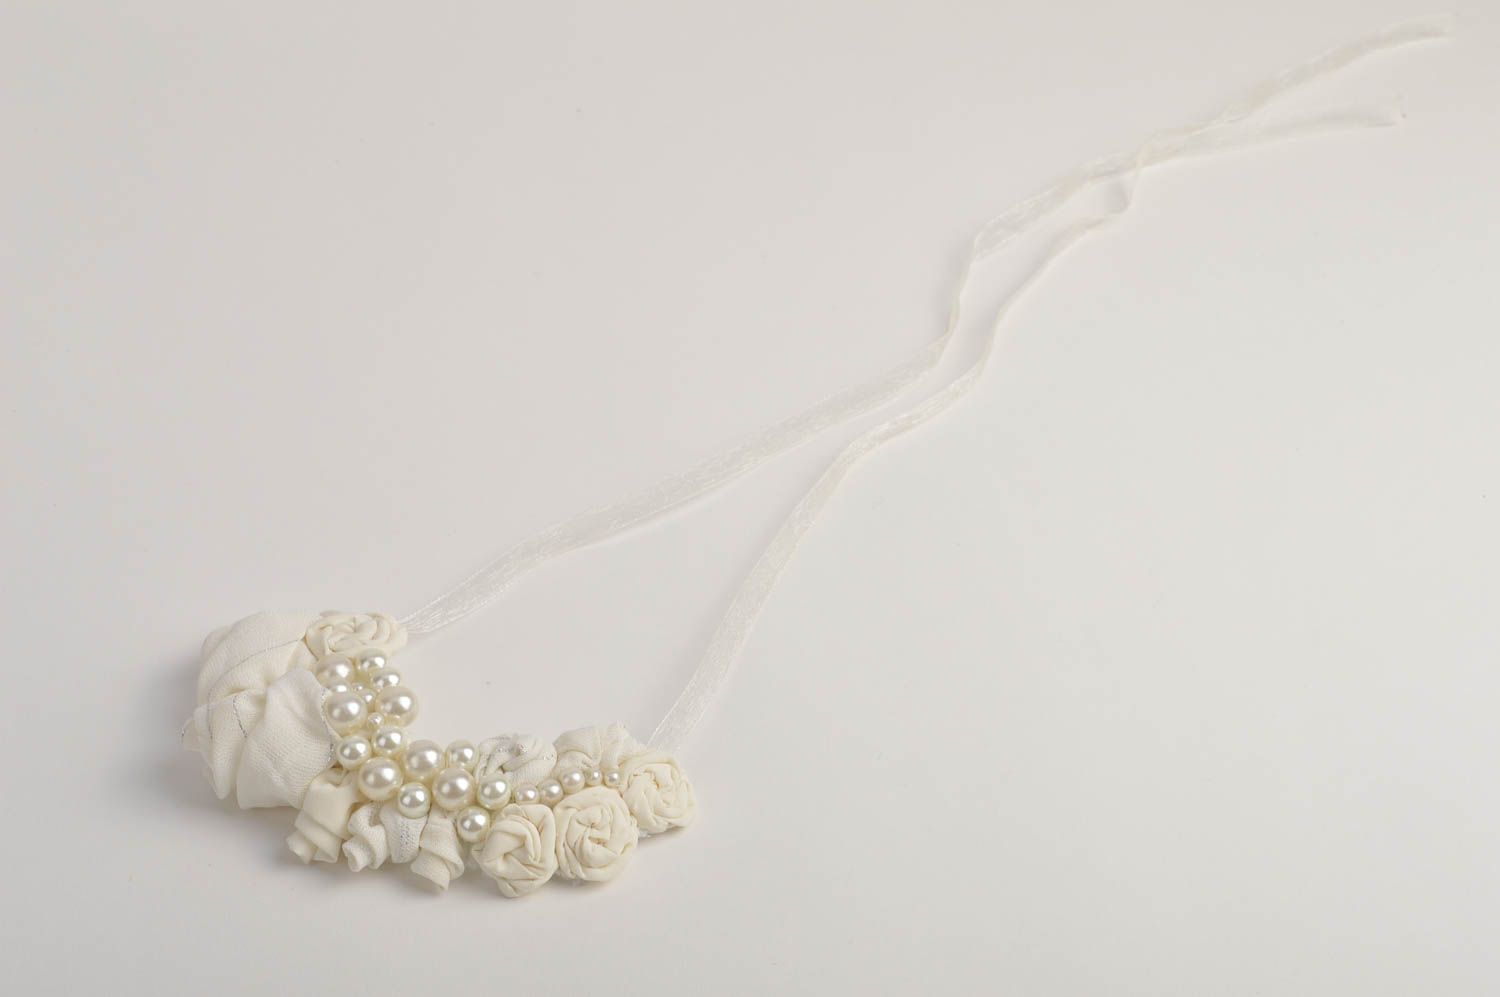 Handmade white festive jewelry stylish designer necklace elegant necklace photo 3